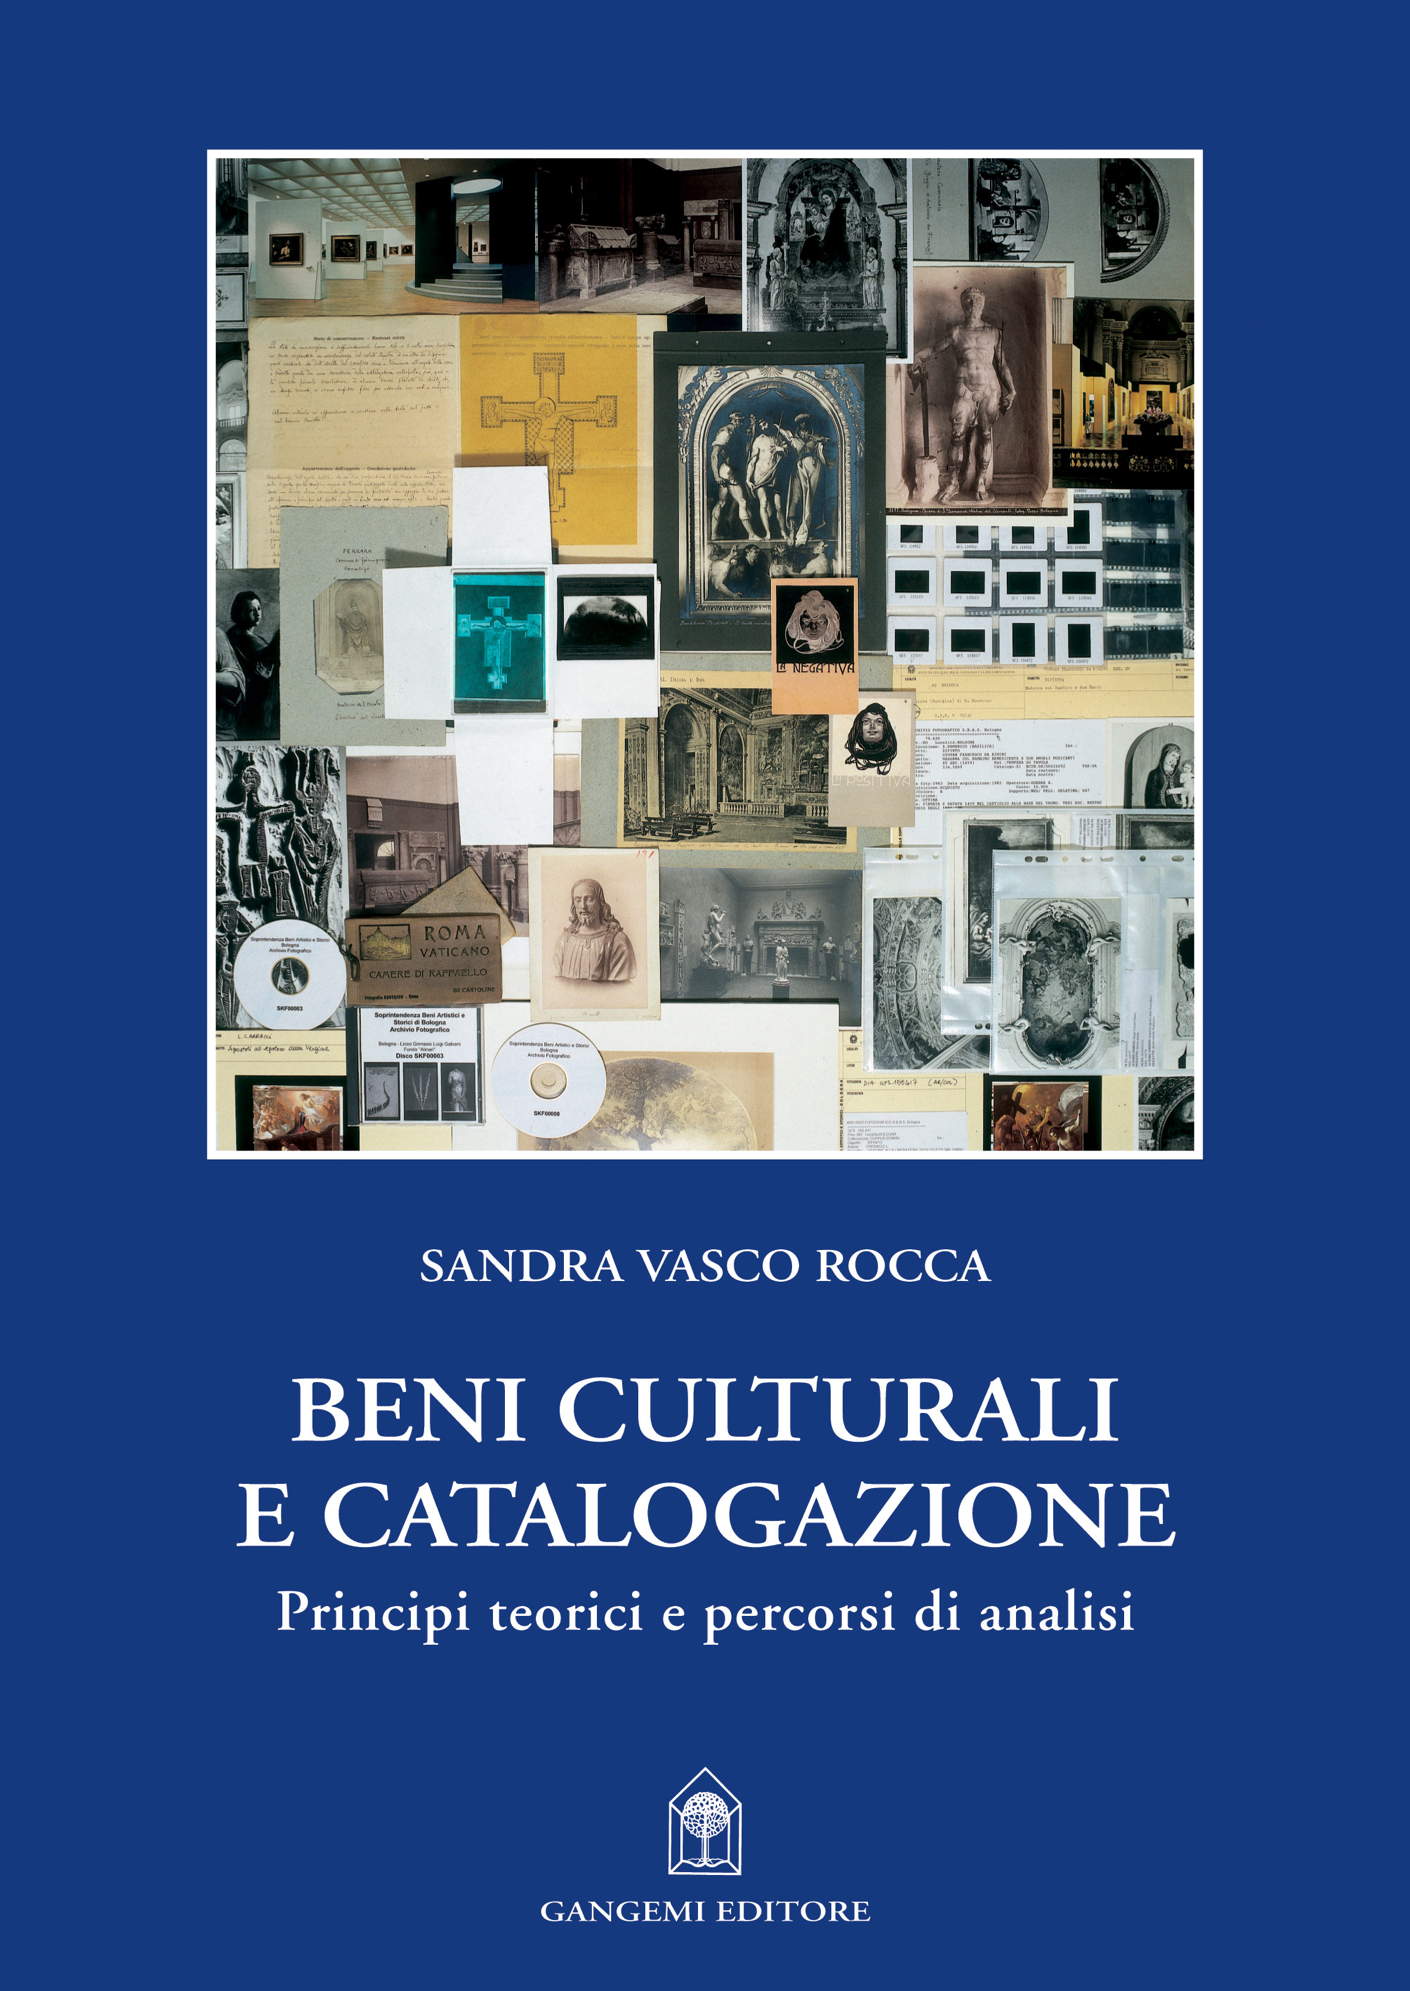 E-book, Beni culturali e catalogazione : principi  teorici e percorsi di analisi, Vasco Rocca, Sandra, Gangemi